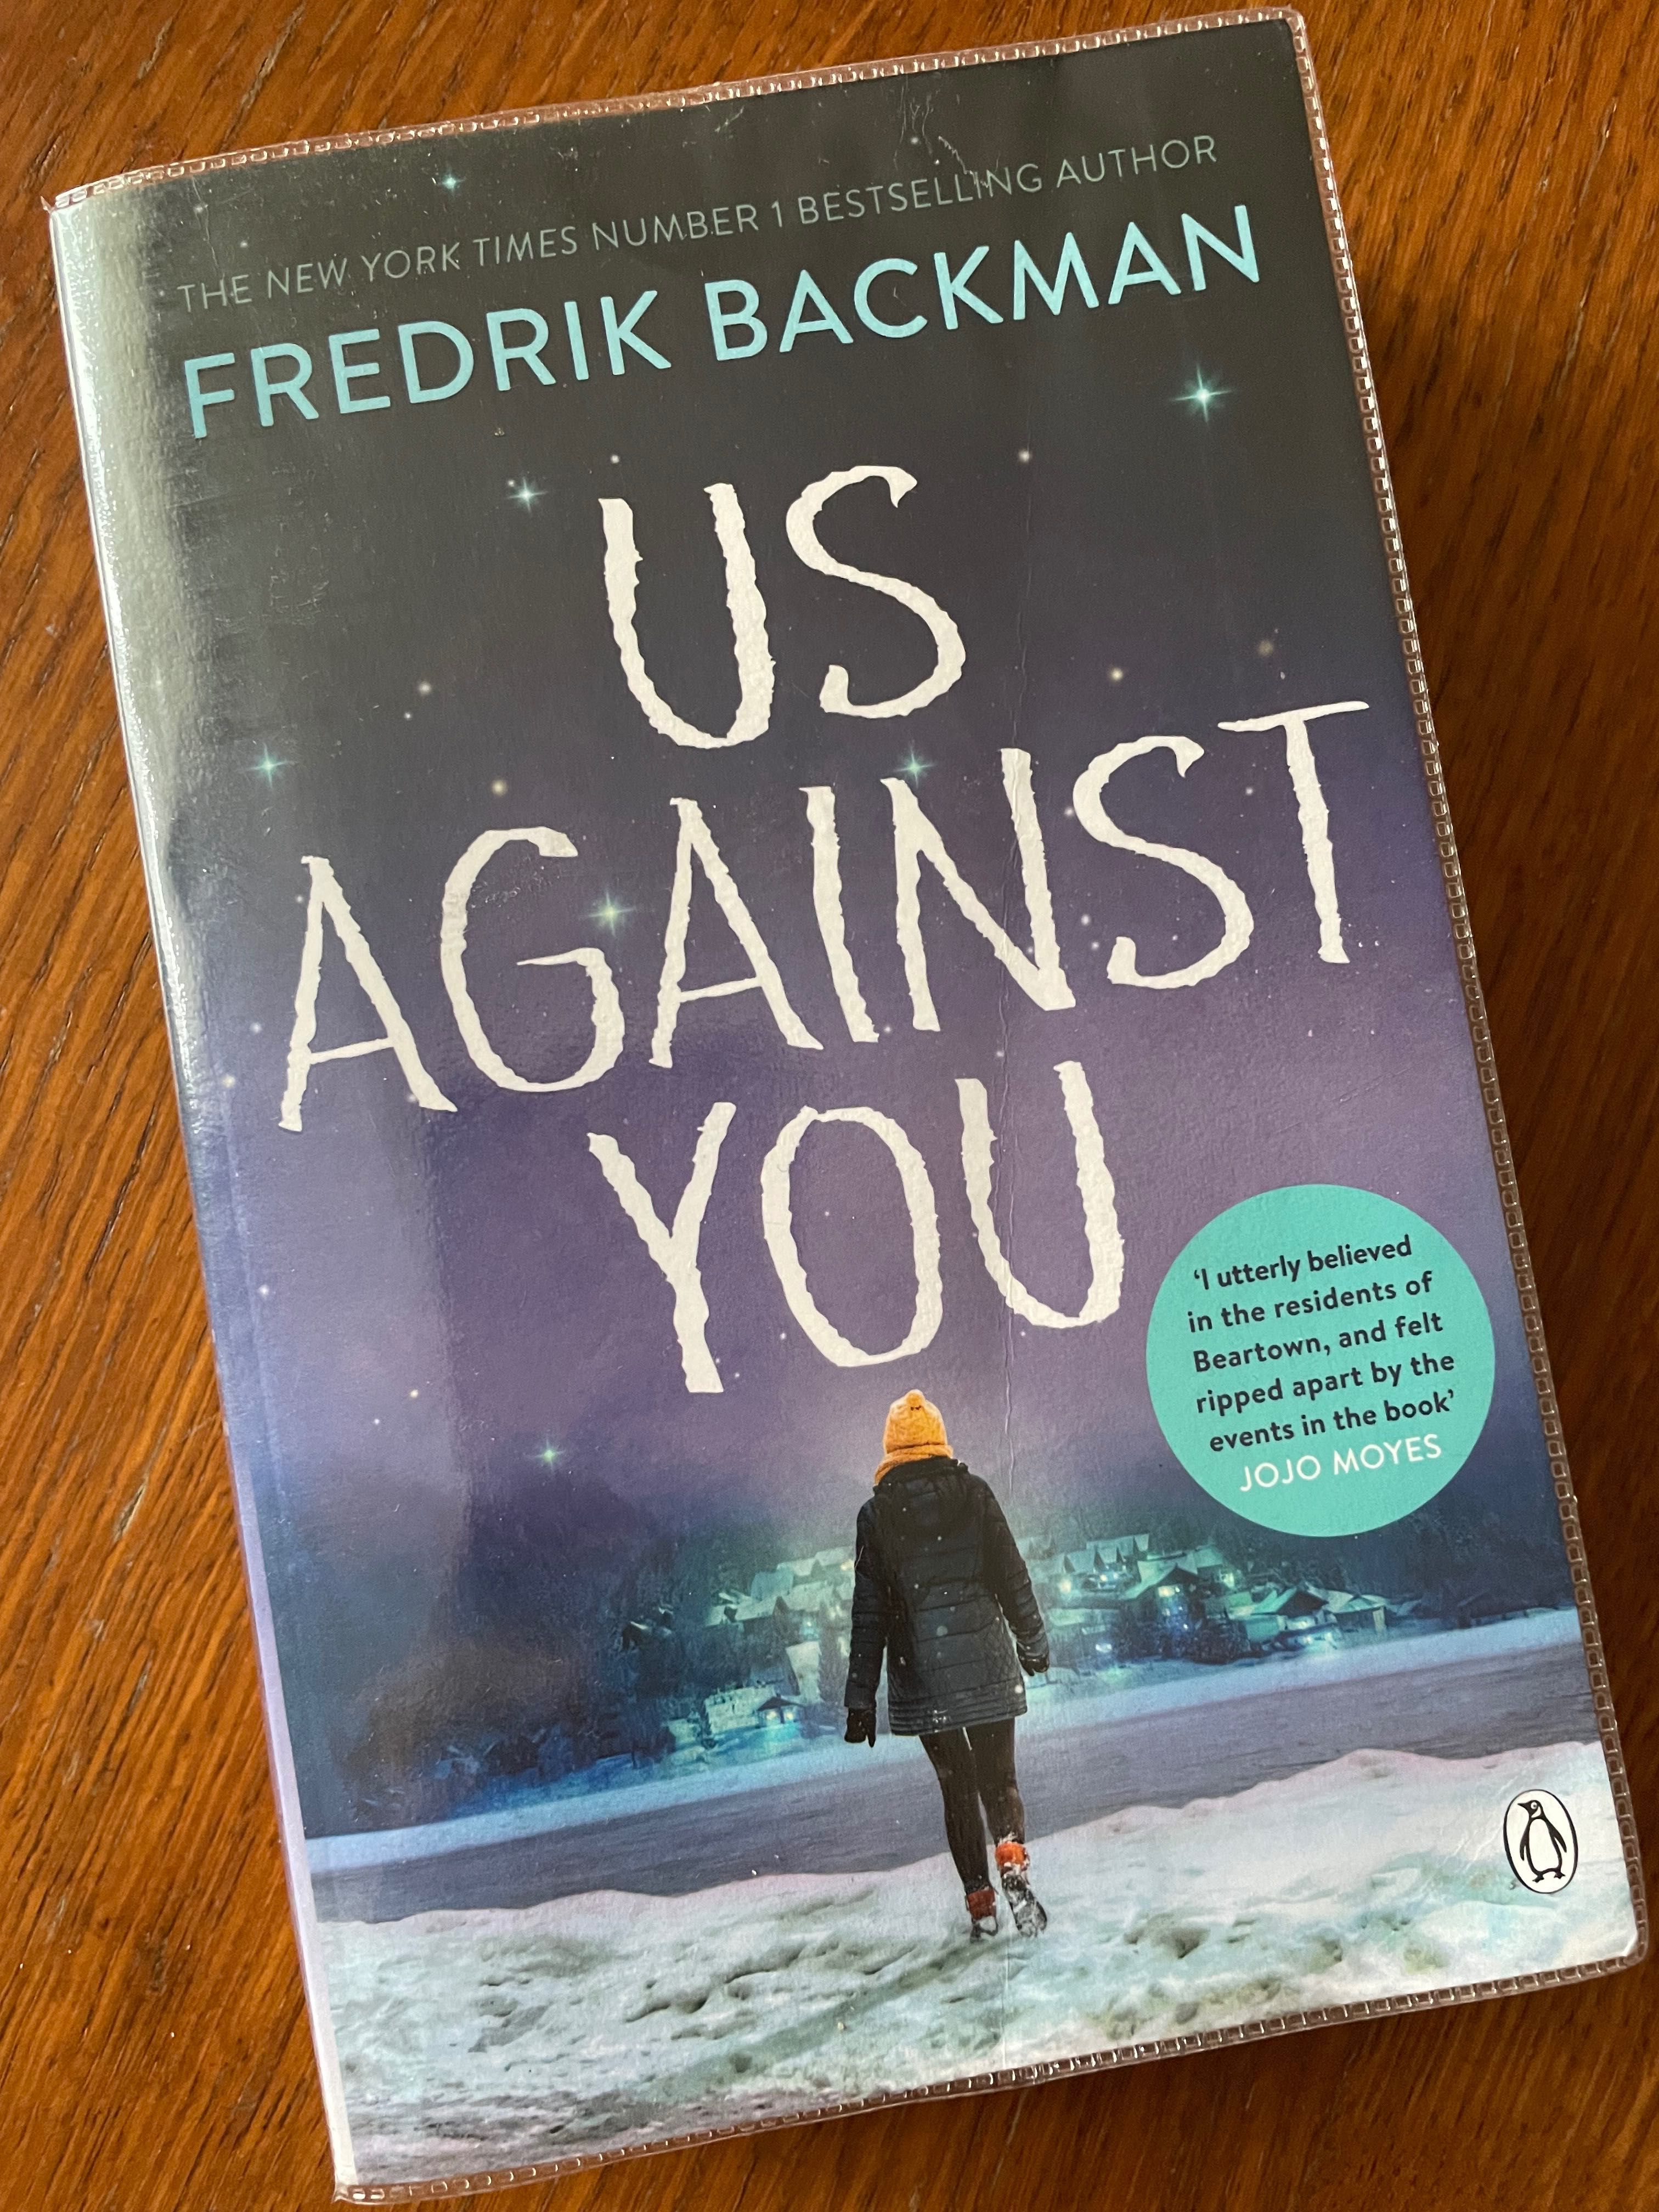 Книга Fredrik Backman “Us Against You”